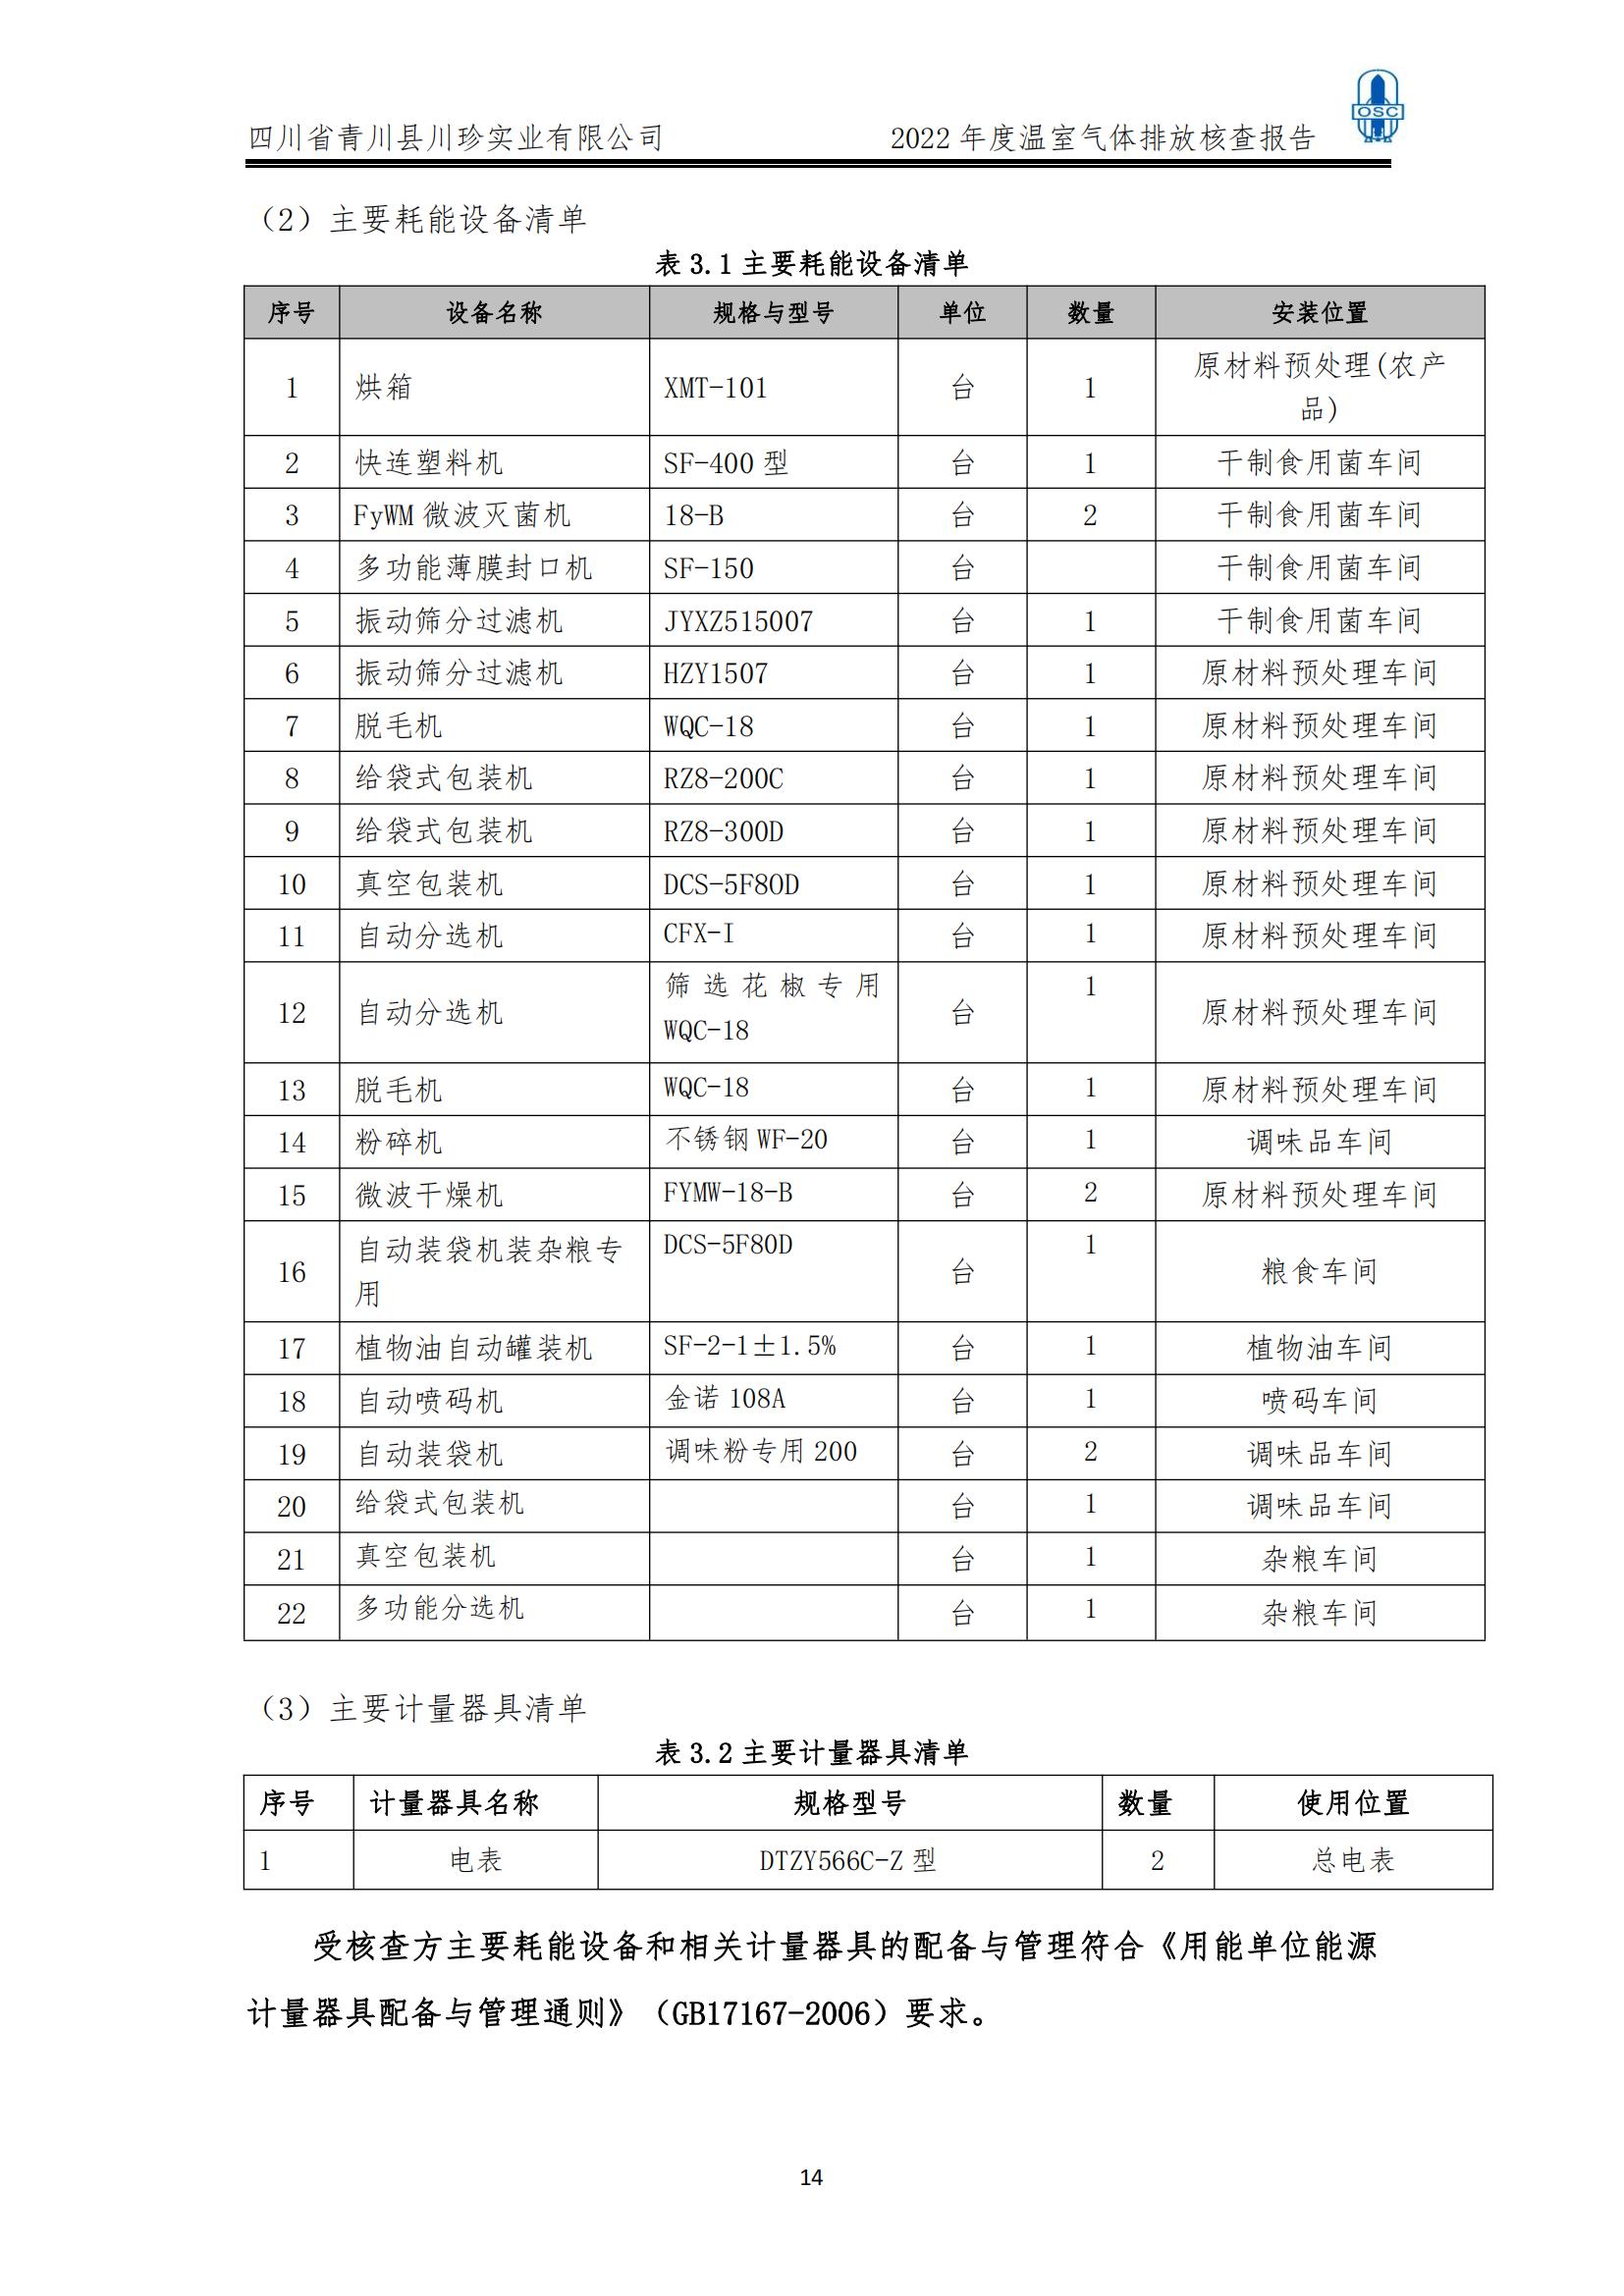 2022年度温室气体核查报告(四川省青川县川珍实业有限公司(图15)